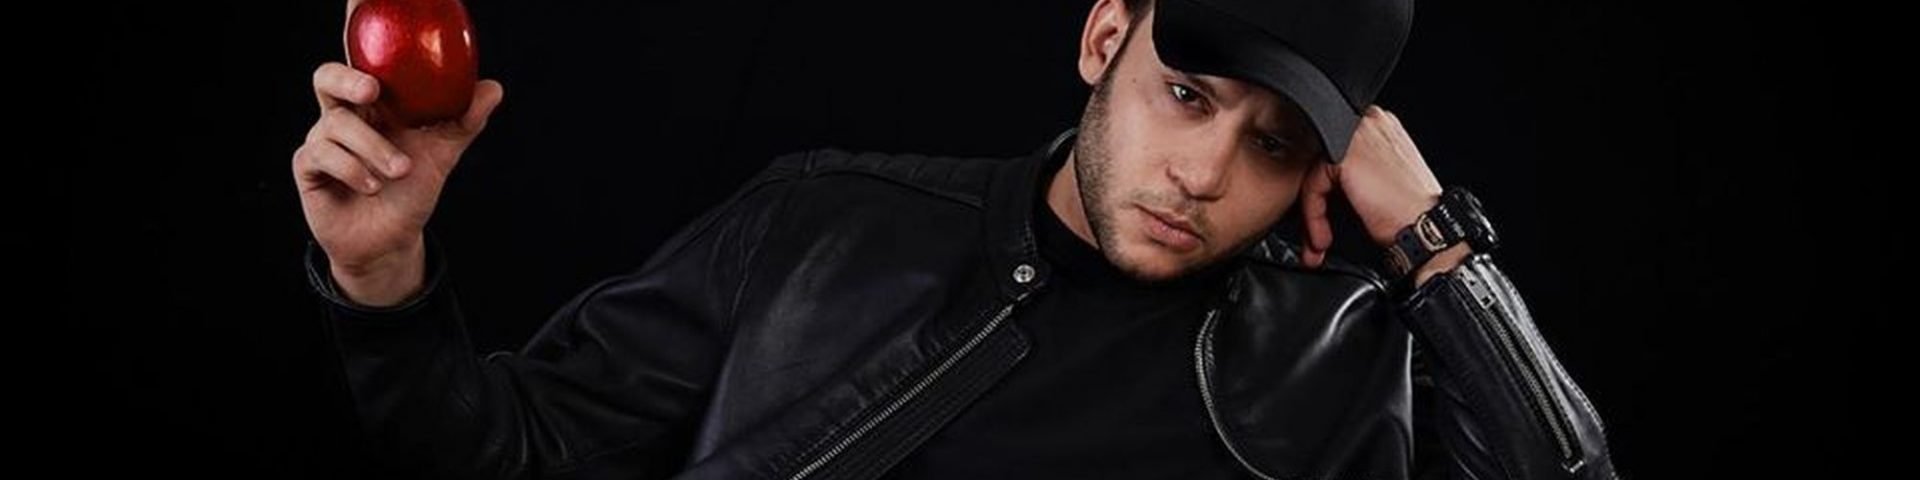 Chi è Rancore, rapper di Sanremo 2020?